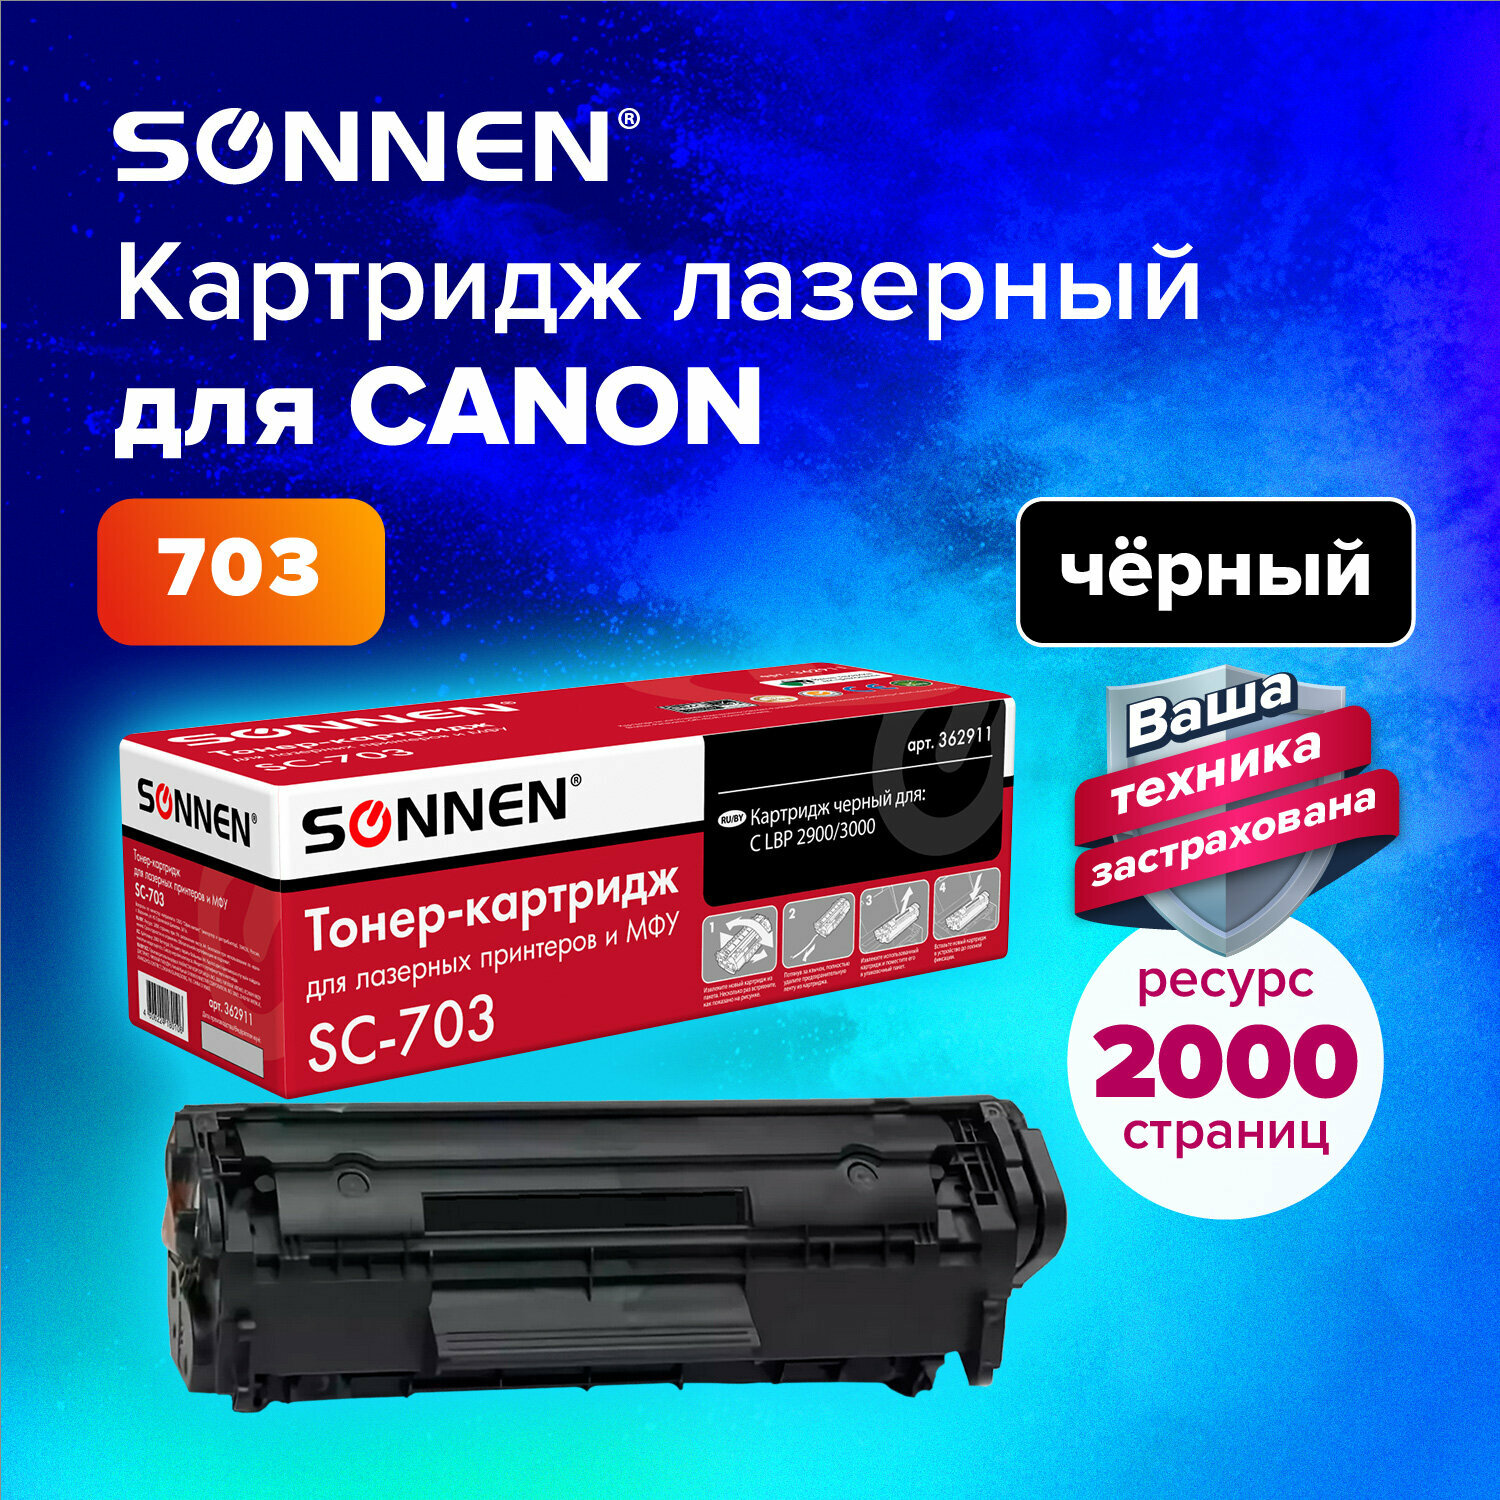 Тонер-картридж для принтера лазерный совместимый Sonnen (SC-703) для Canon Lbp-2900/3000, ресурс 2000 страниц, 362911